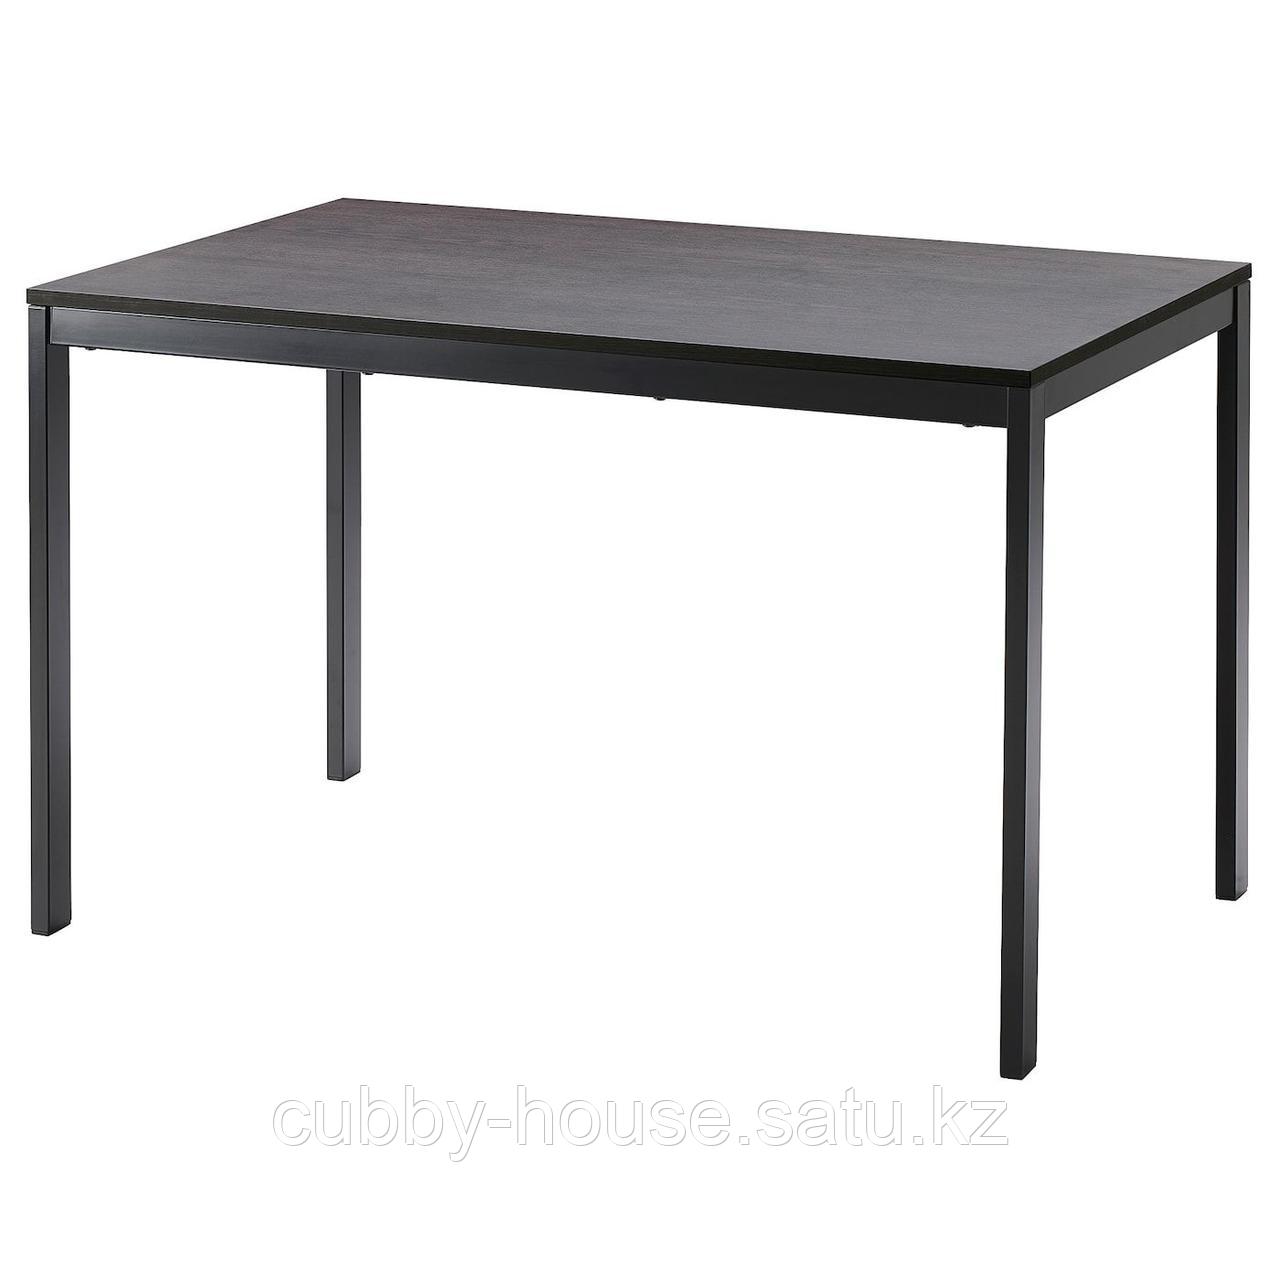 ВАНГСТА Раздвижной стол, черный, темно-коричневый, 120/180x75 см